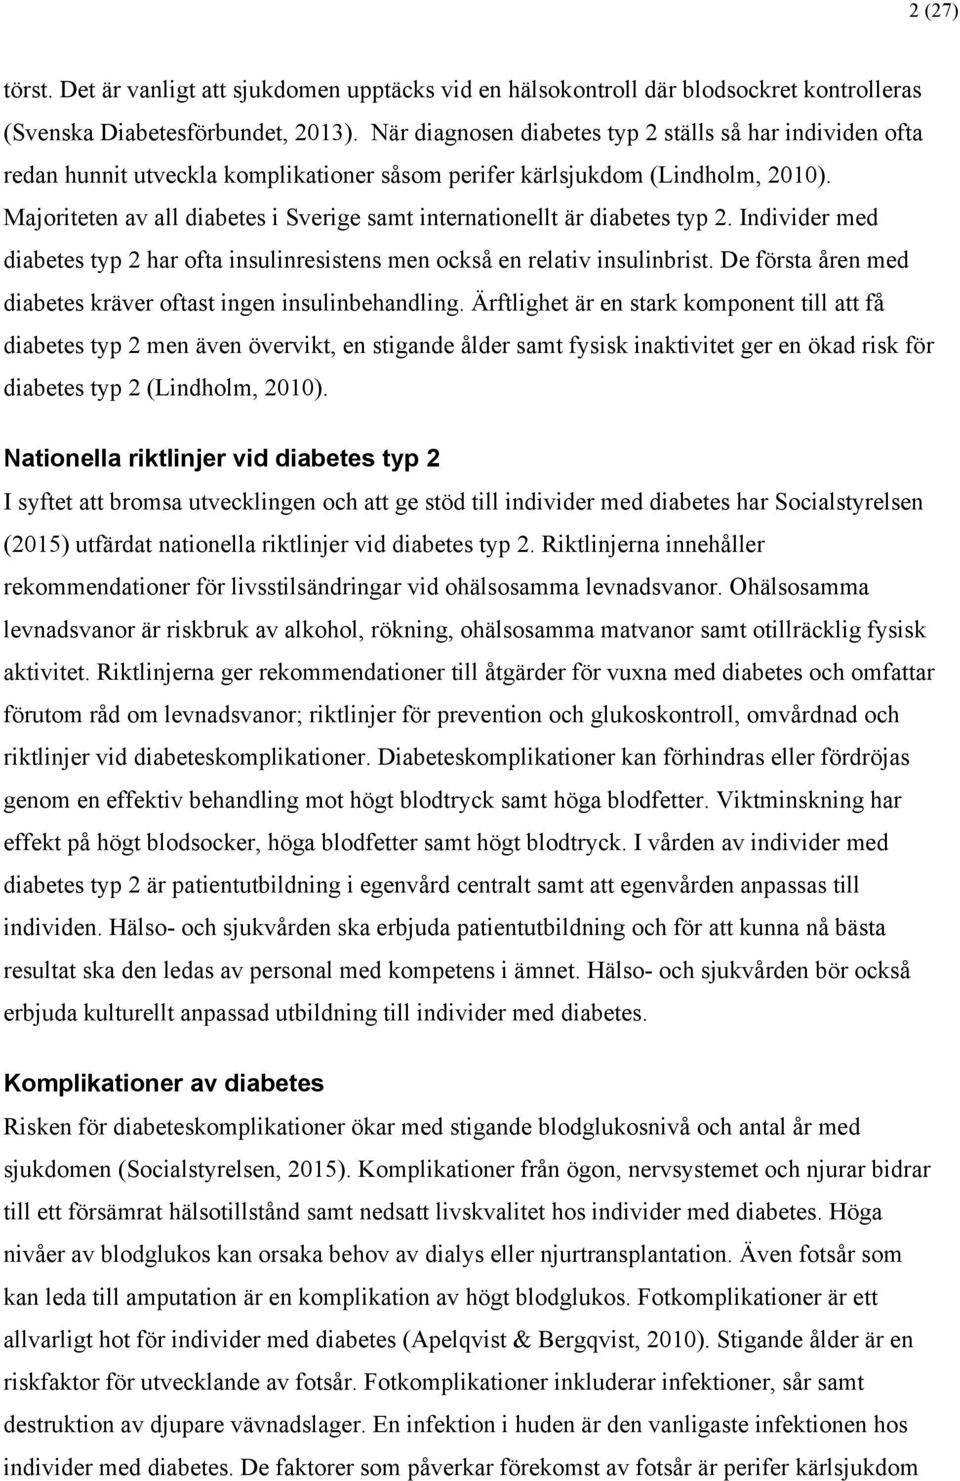 Majoriteten av all diabetes i Sverige samt internationellt är diabetes typ 2. Individer med diabetes typ 2 har ofta insulinresistens men också en relativ insulinbrist.